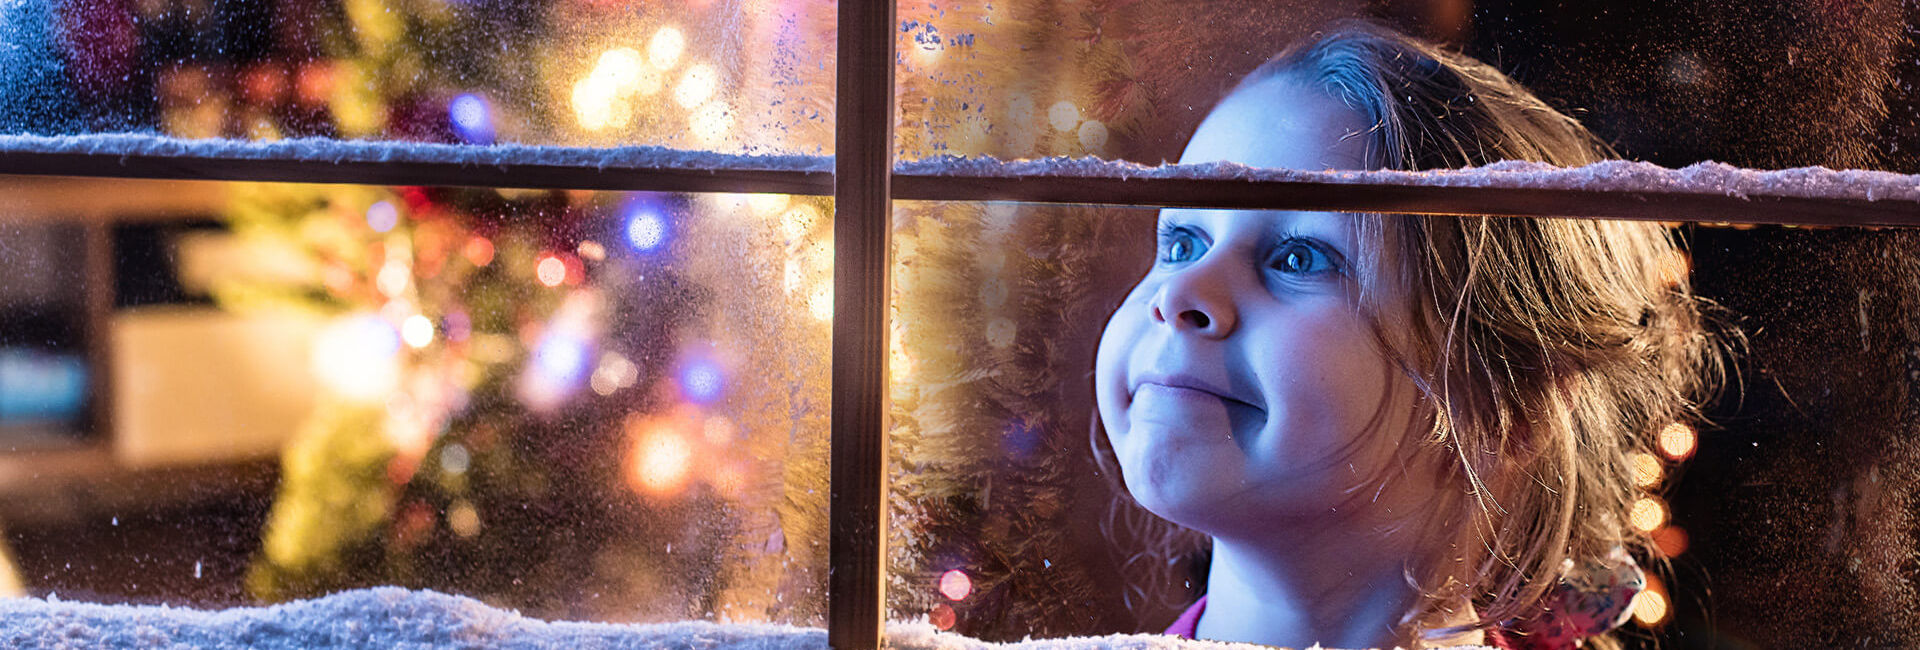 Kind kijkt door het bevroren raam - Kerstavond arrangement Gasterij 't Karrewiel